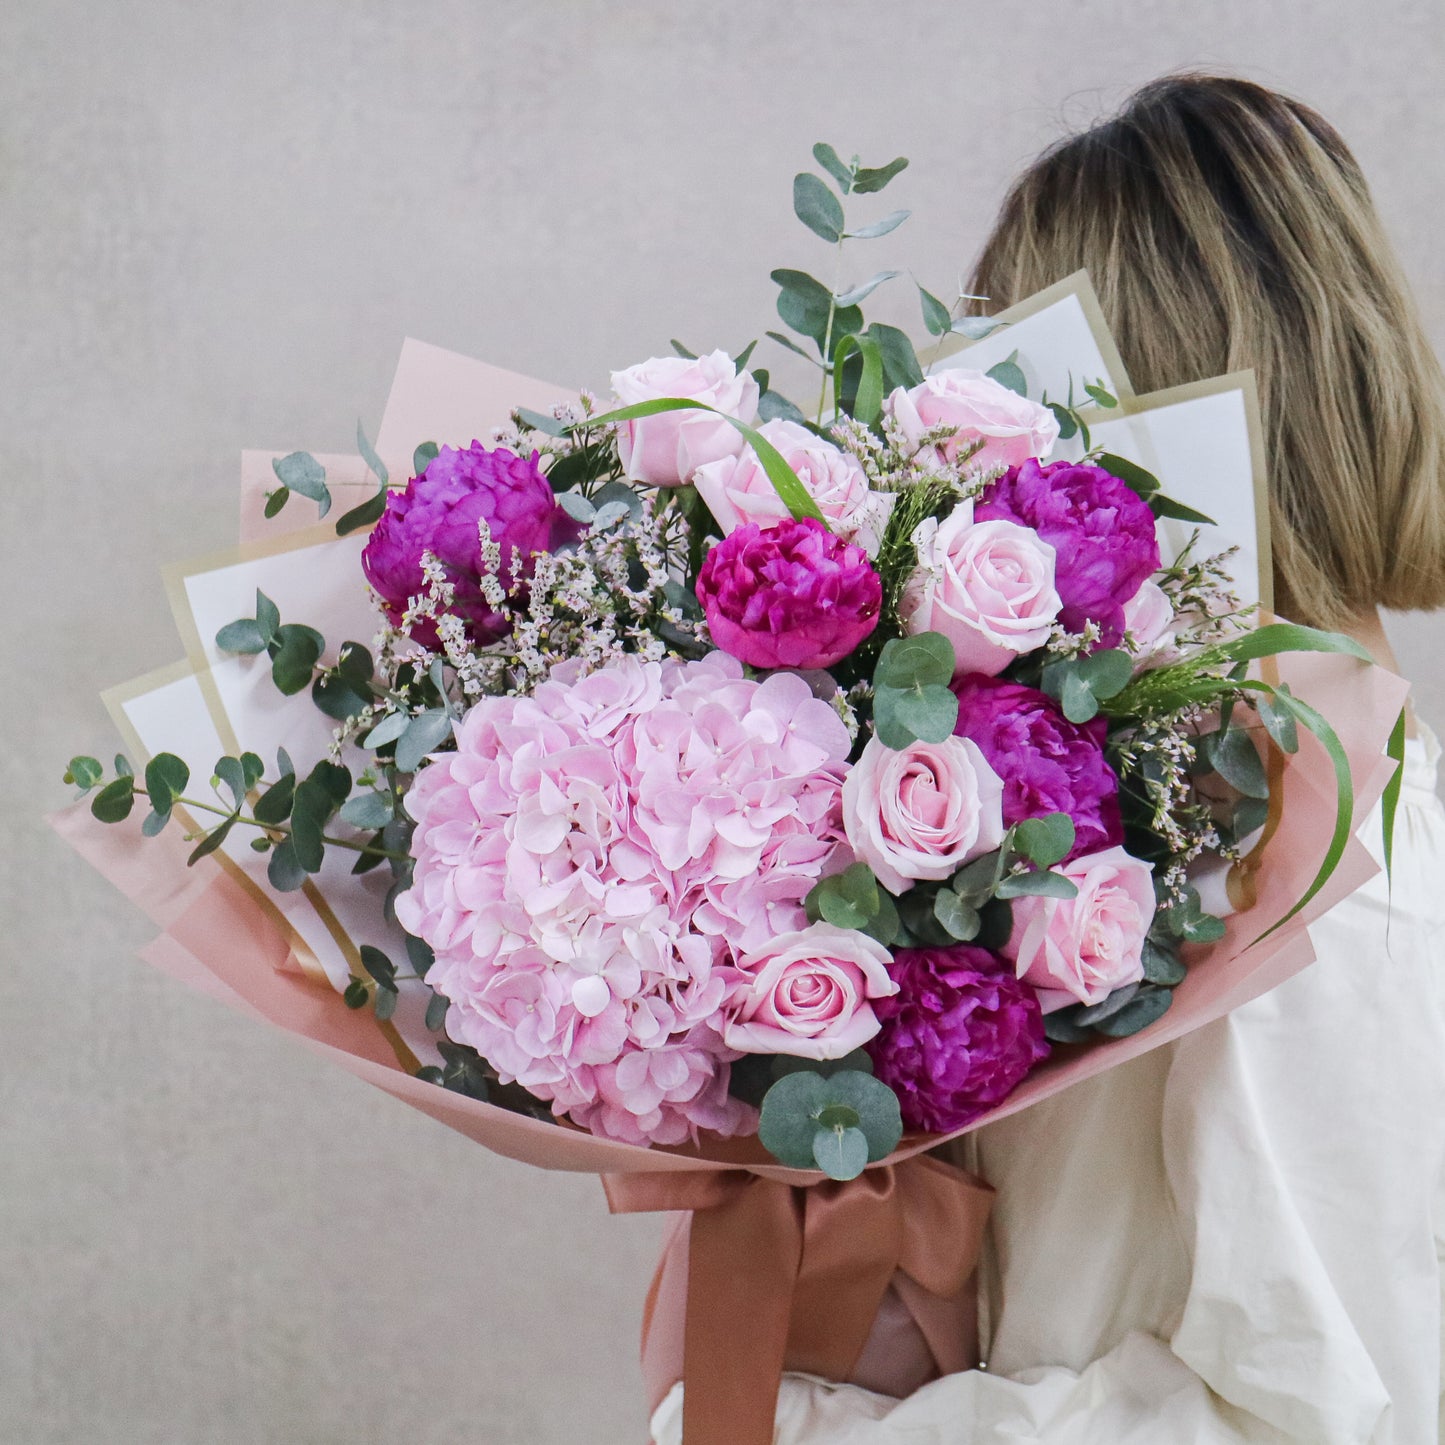 粉白桔梗日射花束 Pink white eustoma and stock bouquet